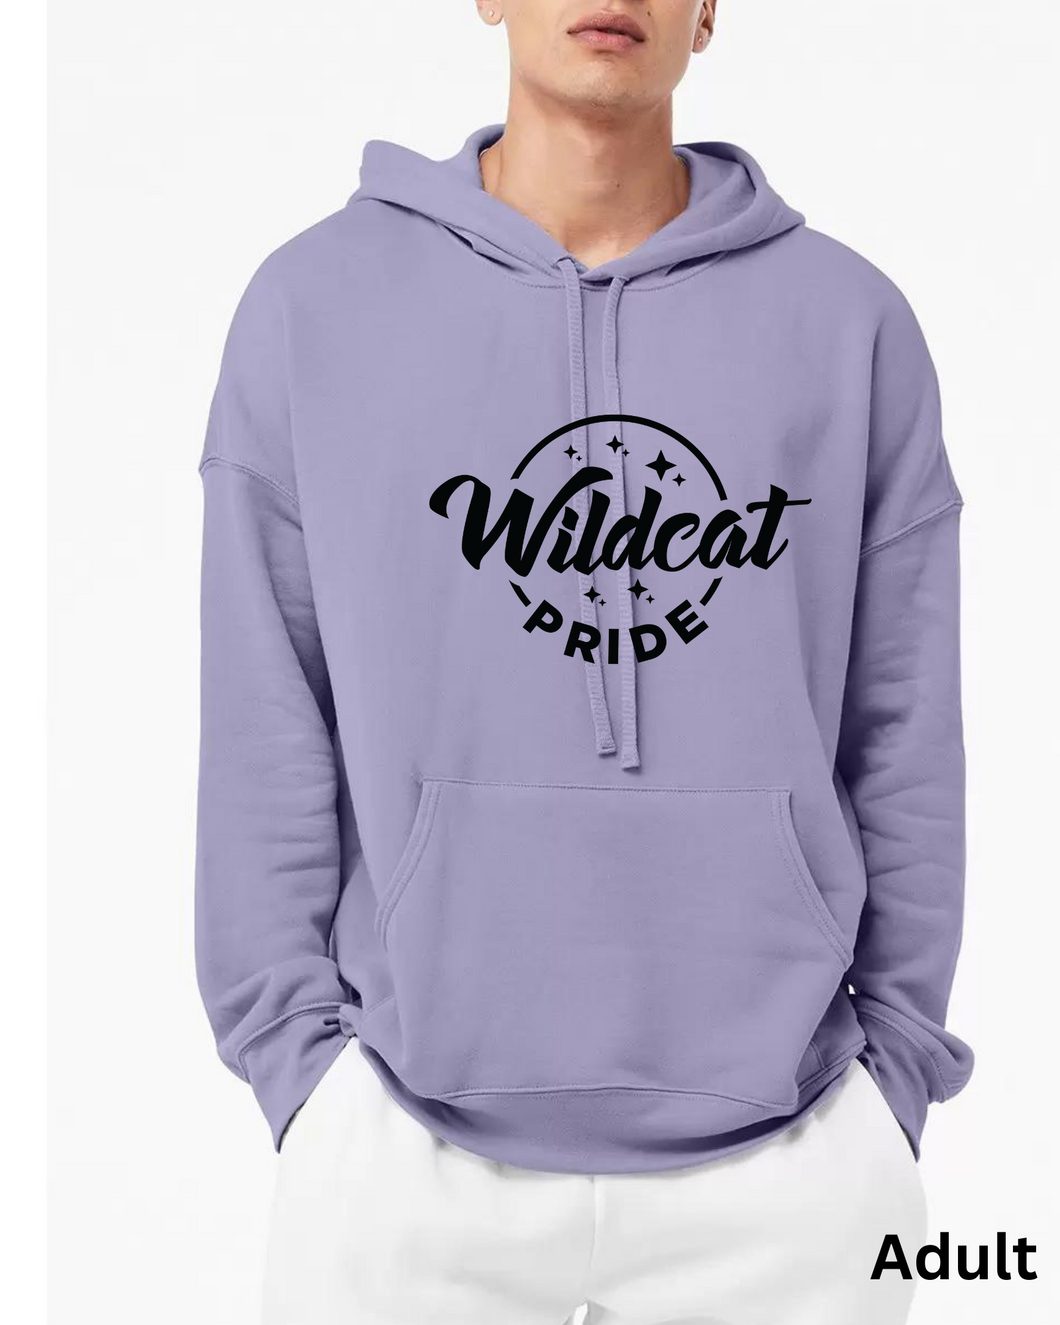 wildcat pride hoodie